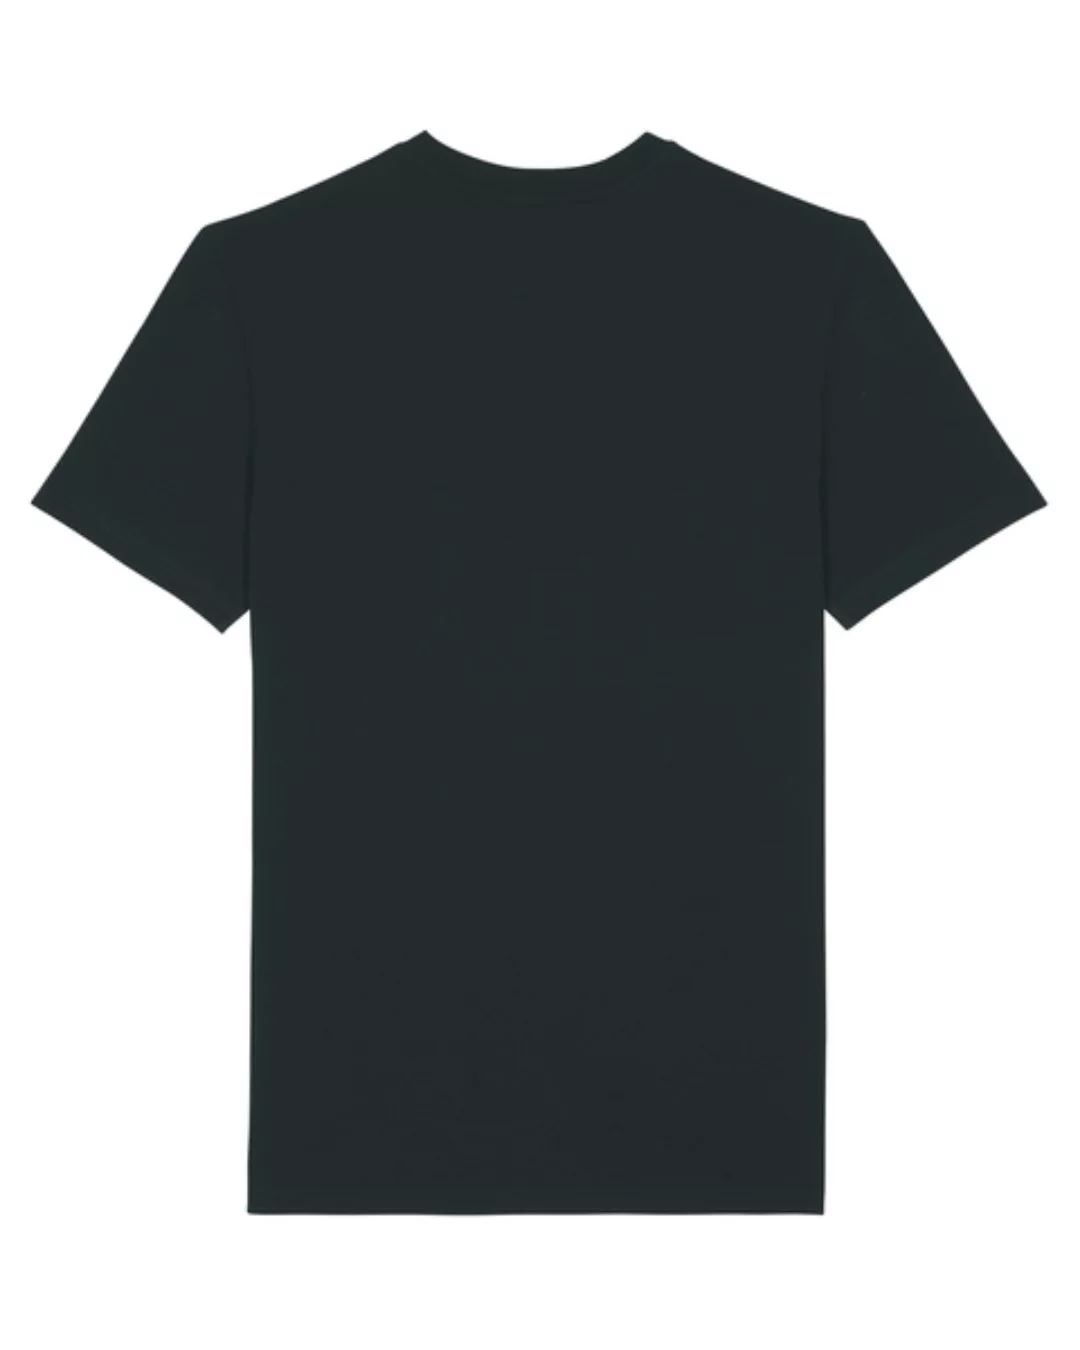 Eco Empire World | Unisex T-shirt günstig online kaufen